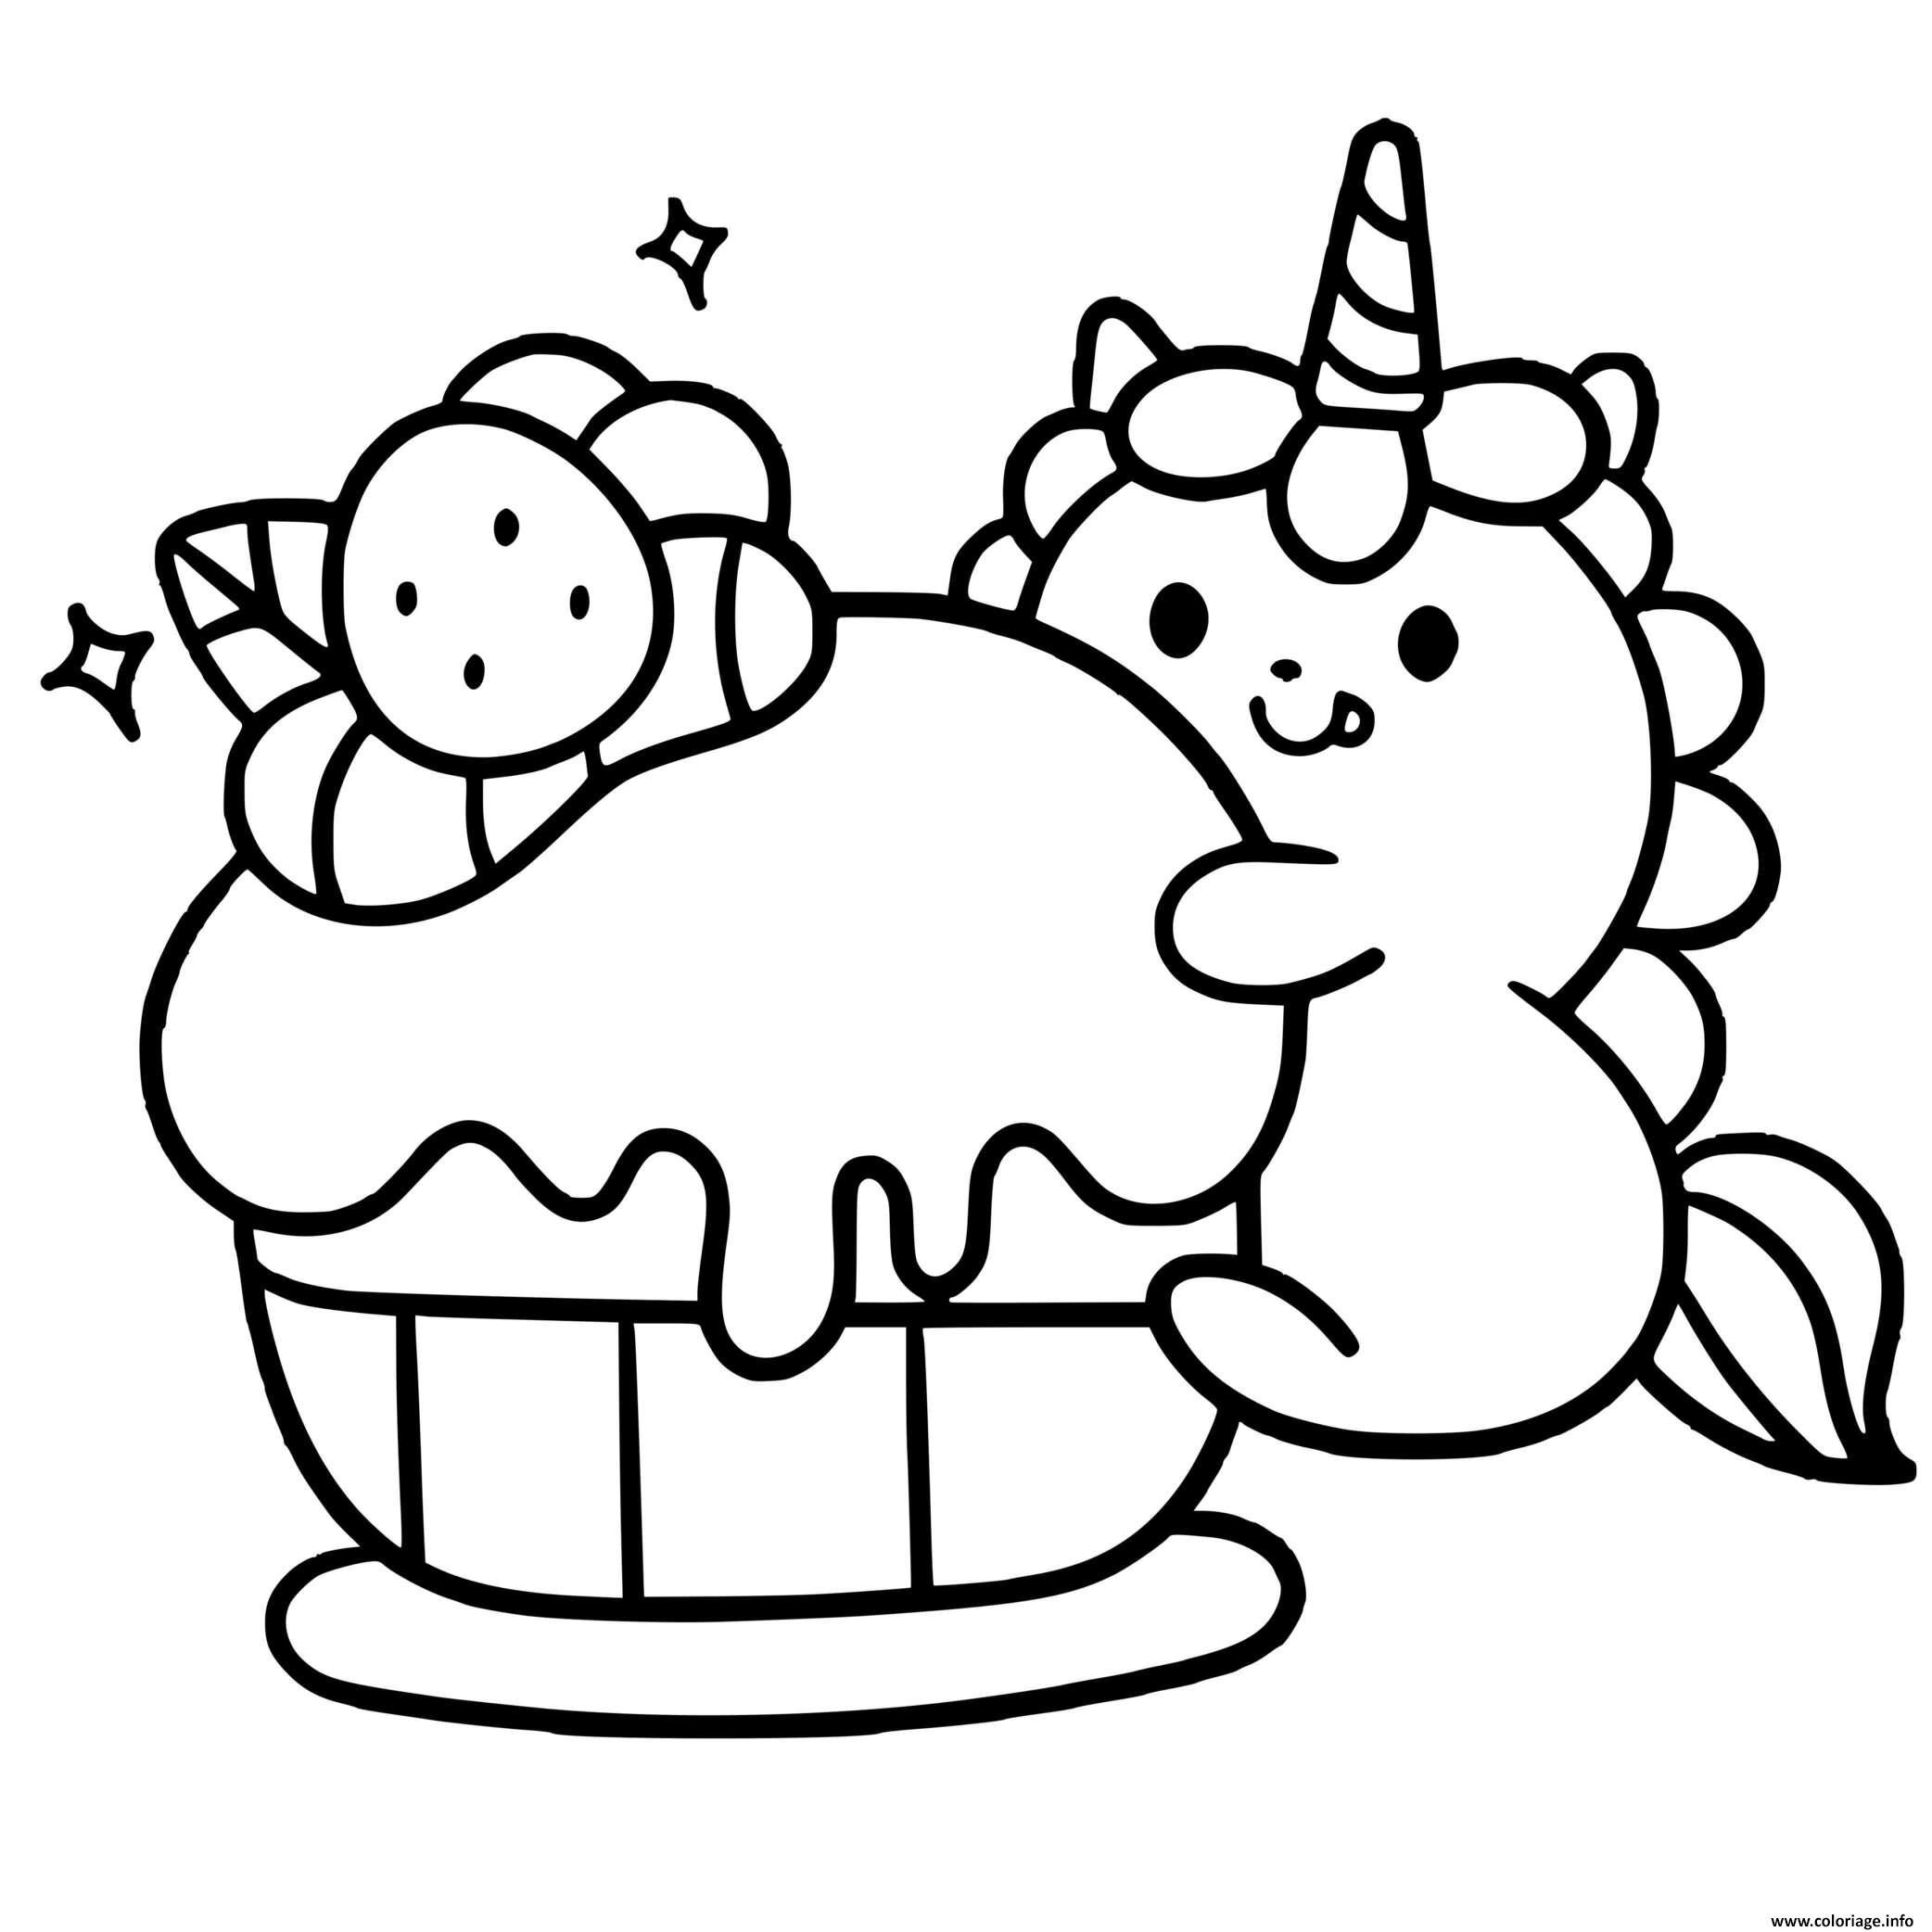 Dessin bebe licorne kawaii cupcake Coloriage Gratuit à Imprimer